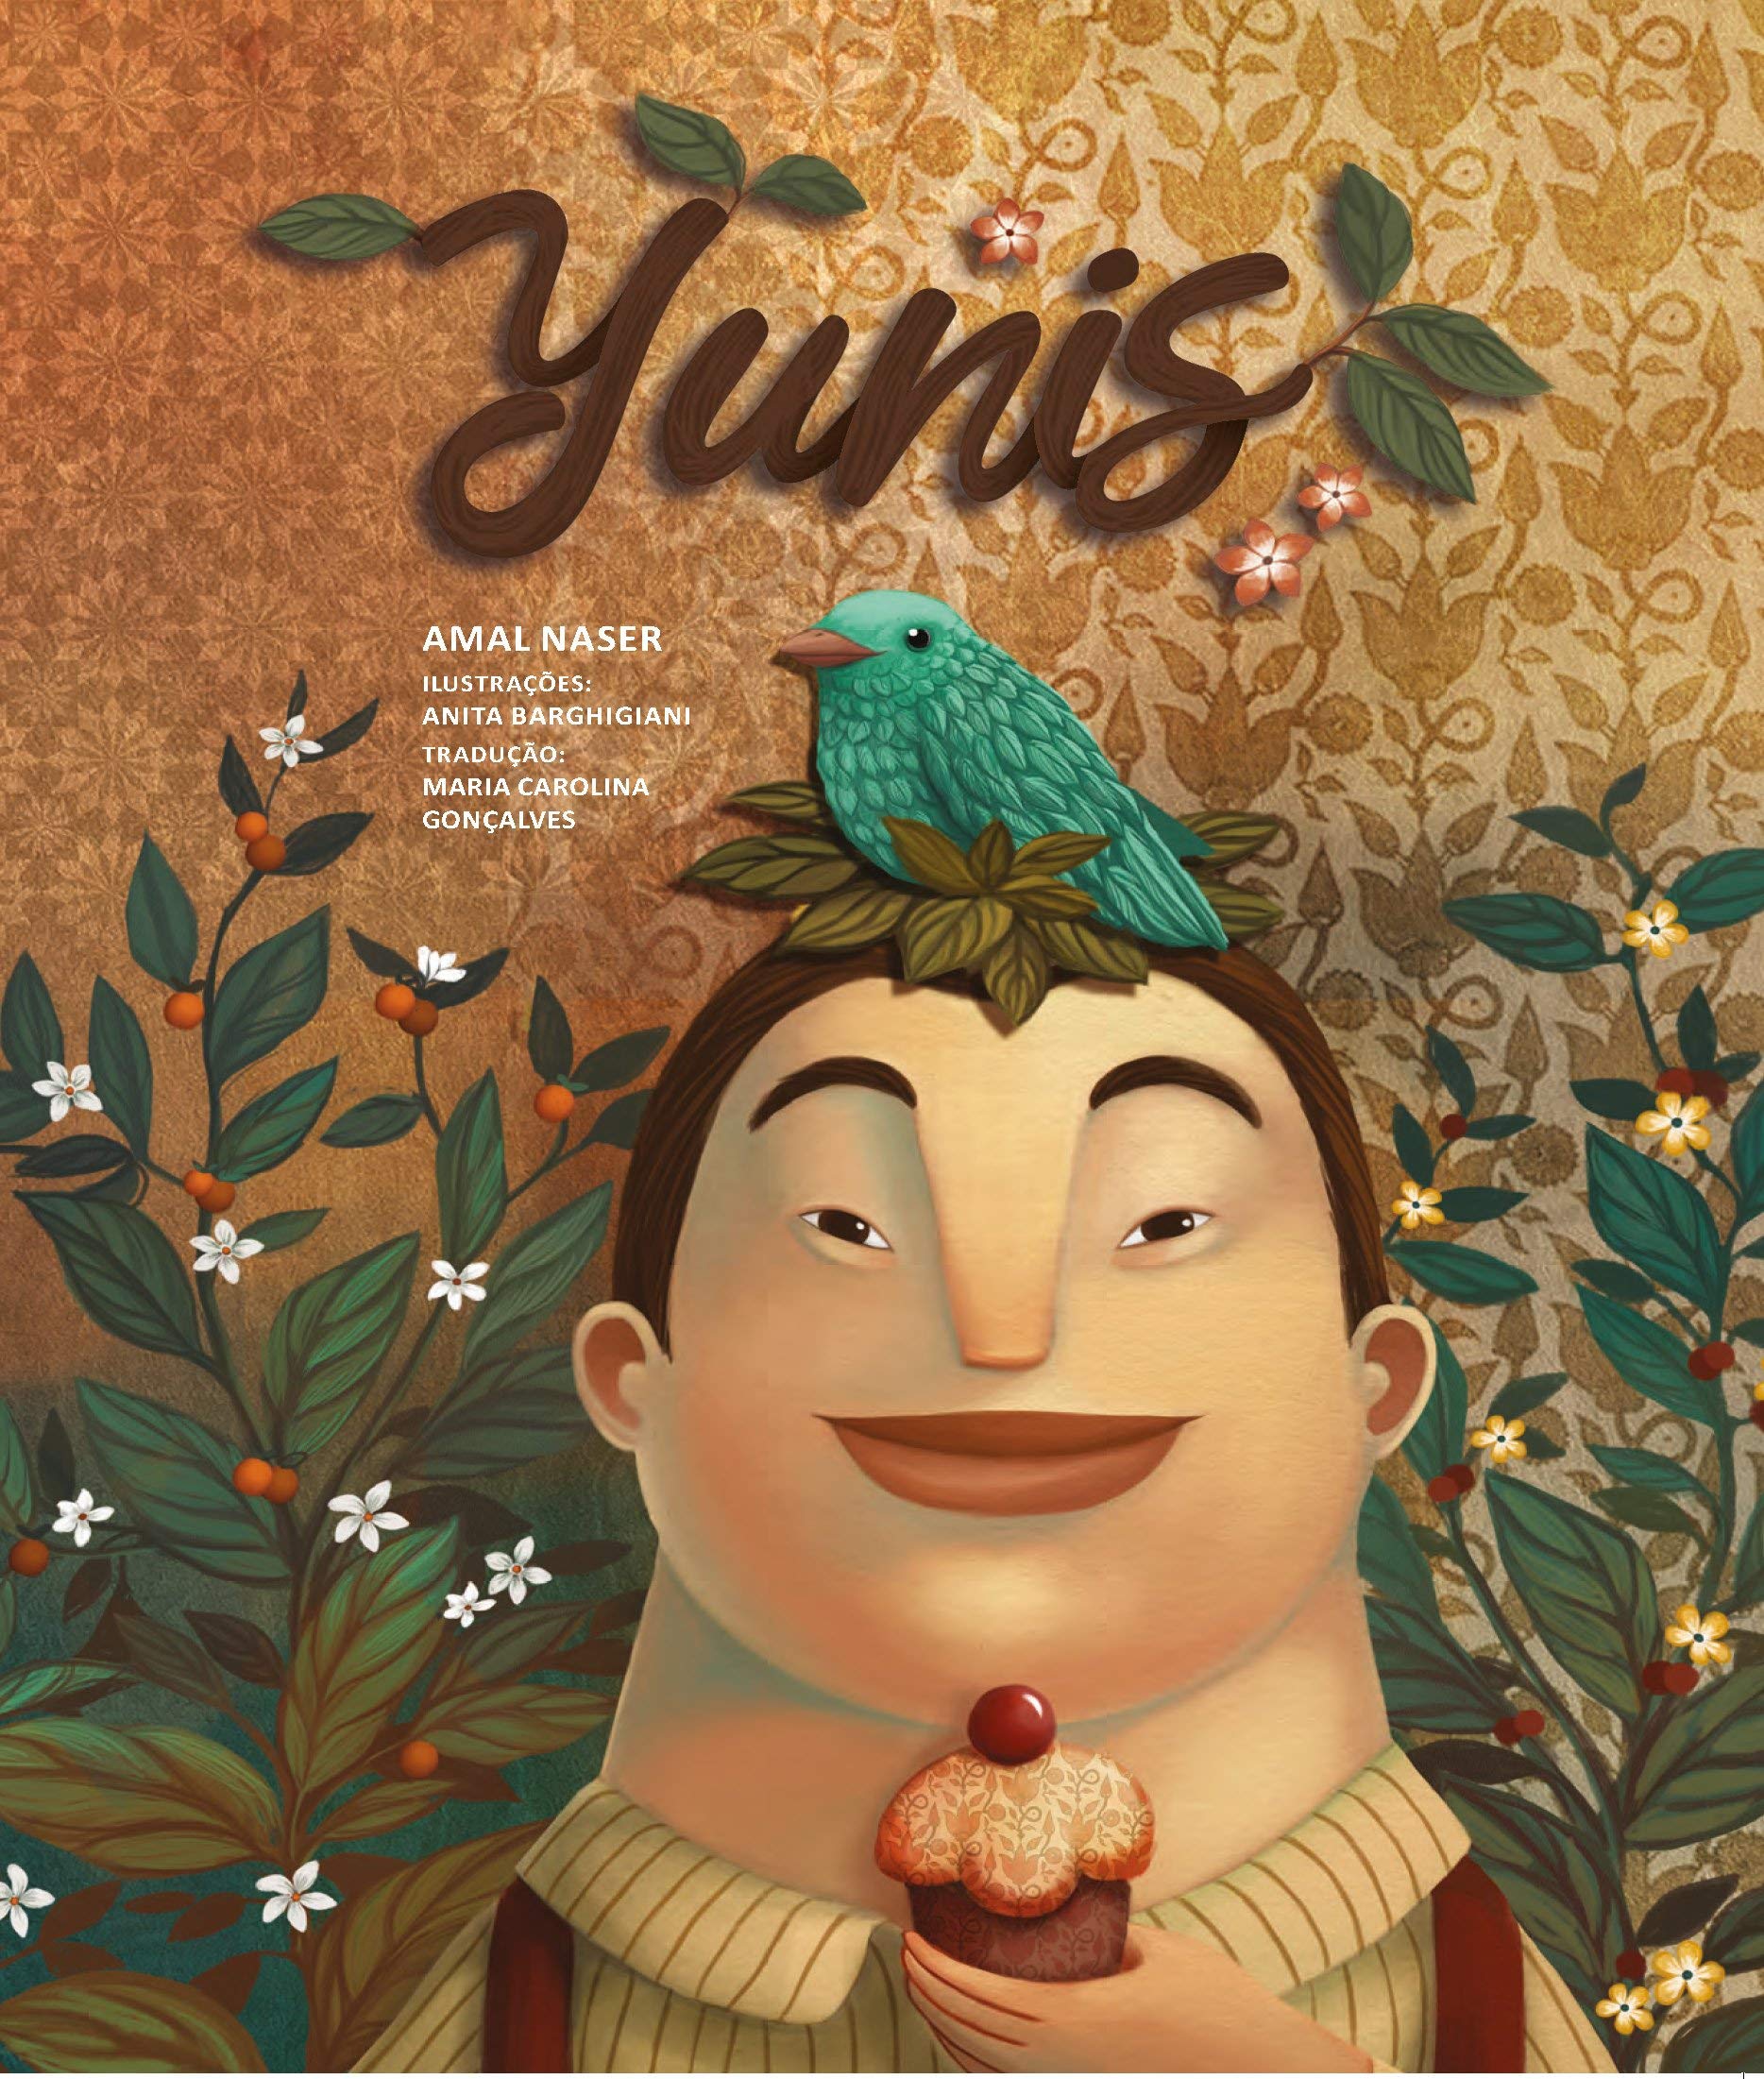 Capa do livro "Yunis", de Amal Naser. A imagem mostra um menino de pele clara com um passarinho azul em sua cabeça.